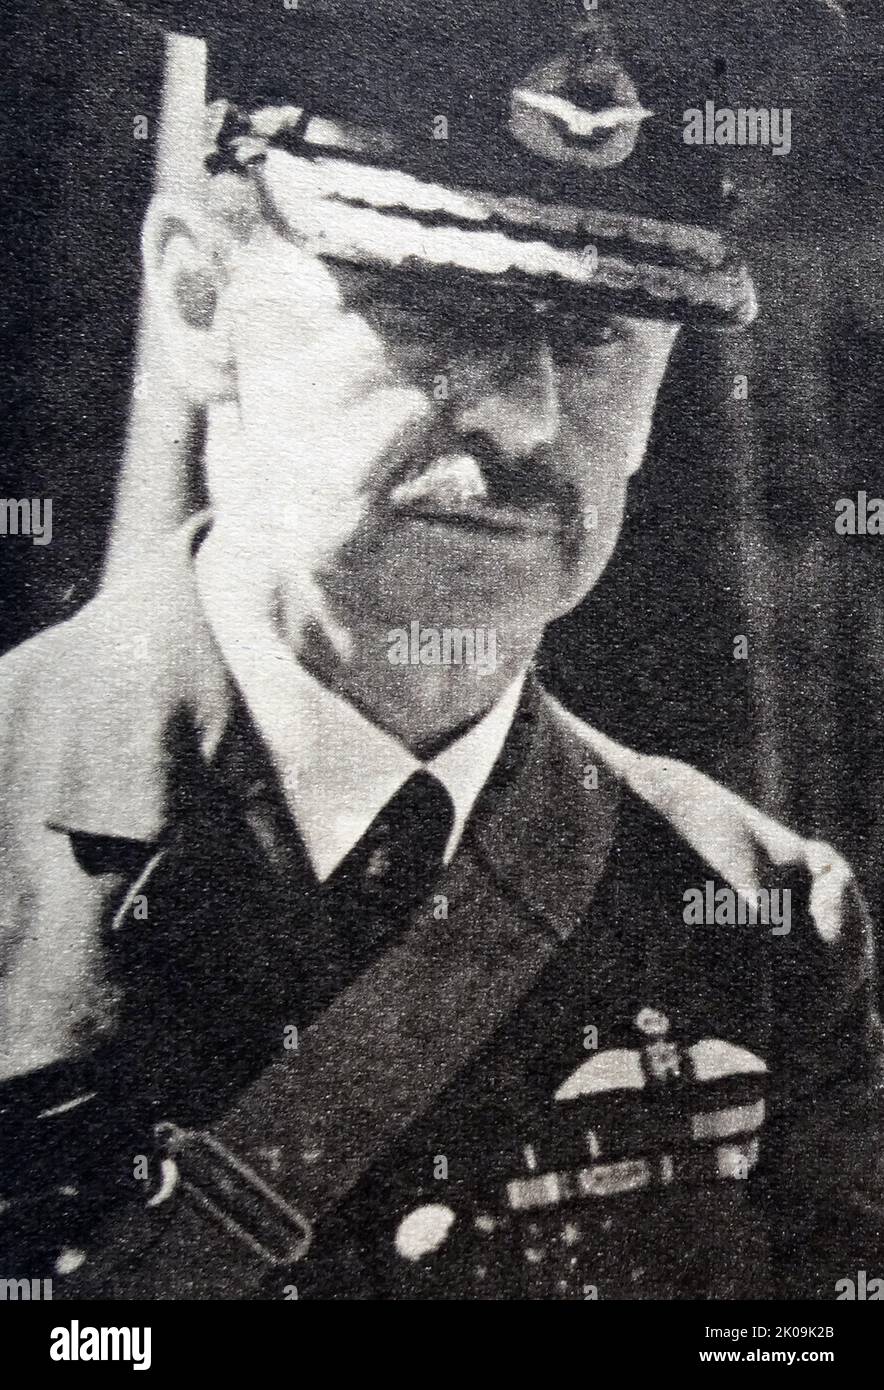 Sir Hugh Dowding était officier de la Royal Air Force. Hugh Caswall Tremenheere Dowding, 1st Baron Dowding, GCB, GCVO, CMG (24 avril 1882 - 15 février 1970) était officier de la Royal Air Force. Il était commandant de l'Air commandant du Fighter Command de la RAF pendant la bataille d'Angleterre et est généralement reconnu pour avoir joué un rôle crucial dans la défense de la Grande-Bretagne, et donc, la défaite du plan d'Adolf Hitler d'envahir la Grande-Bretagne. Banque D'Images